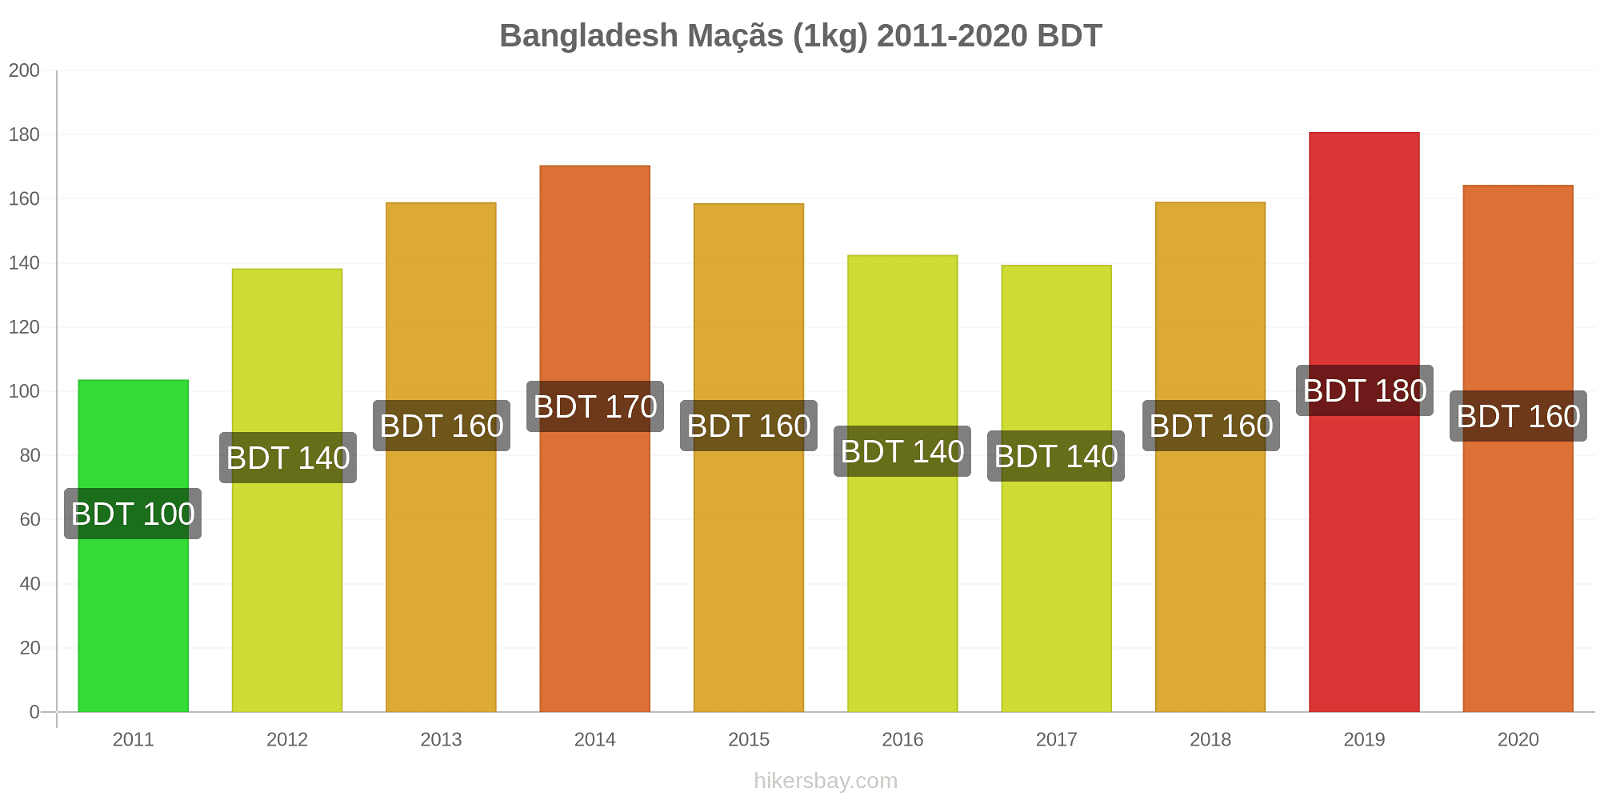 Bangladesh variação de preço Maçãs (1kg) hikersbay.com